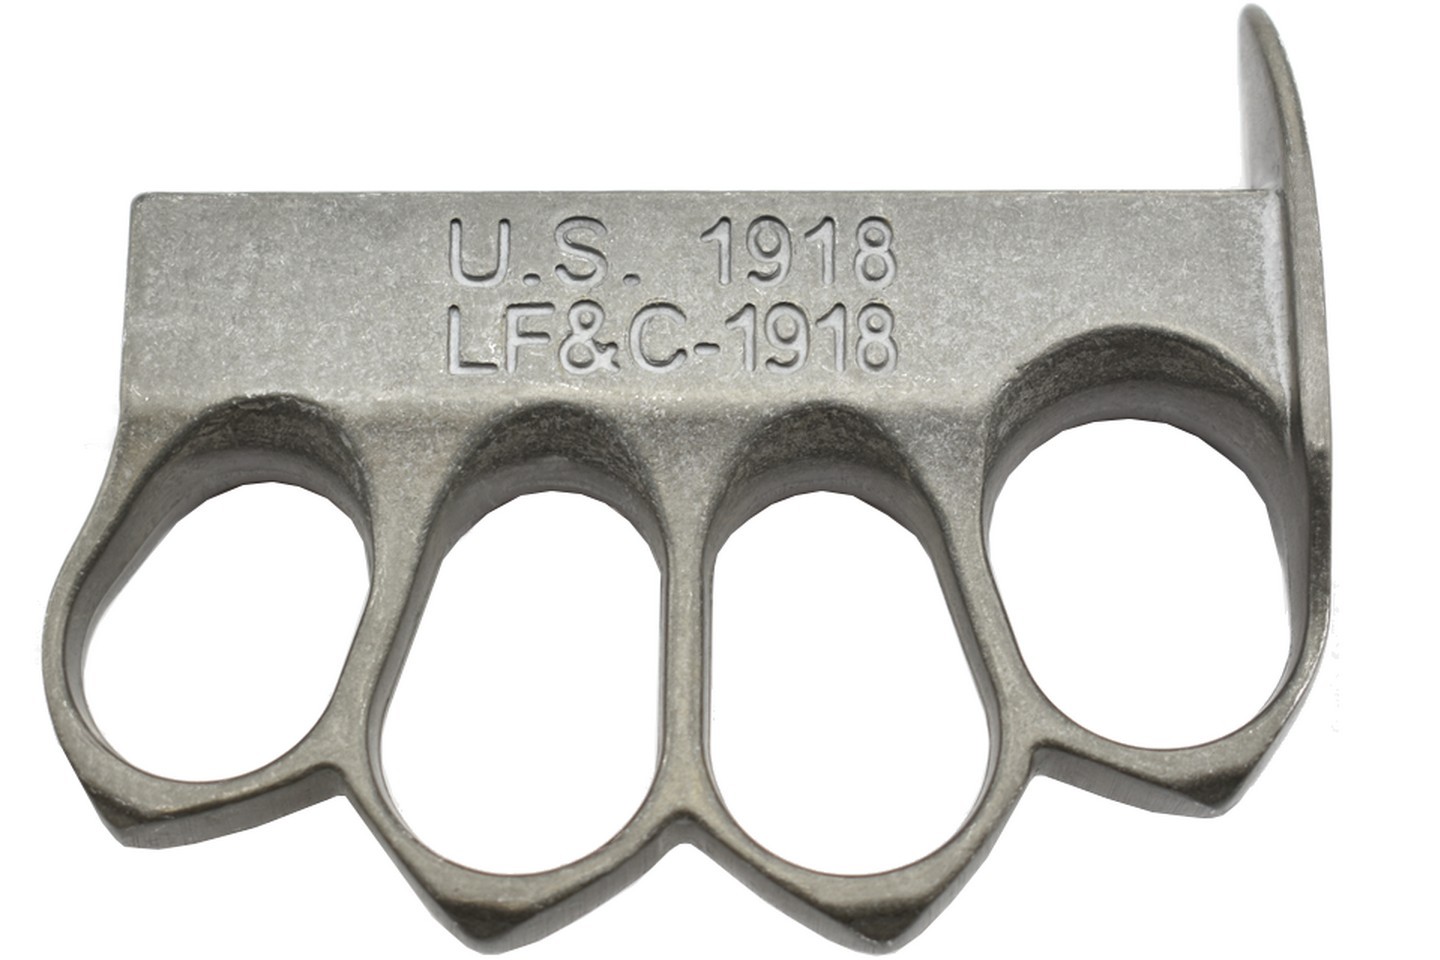 Poing américain couteau de défense Maxknives MK149